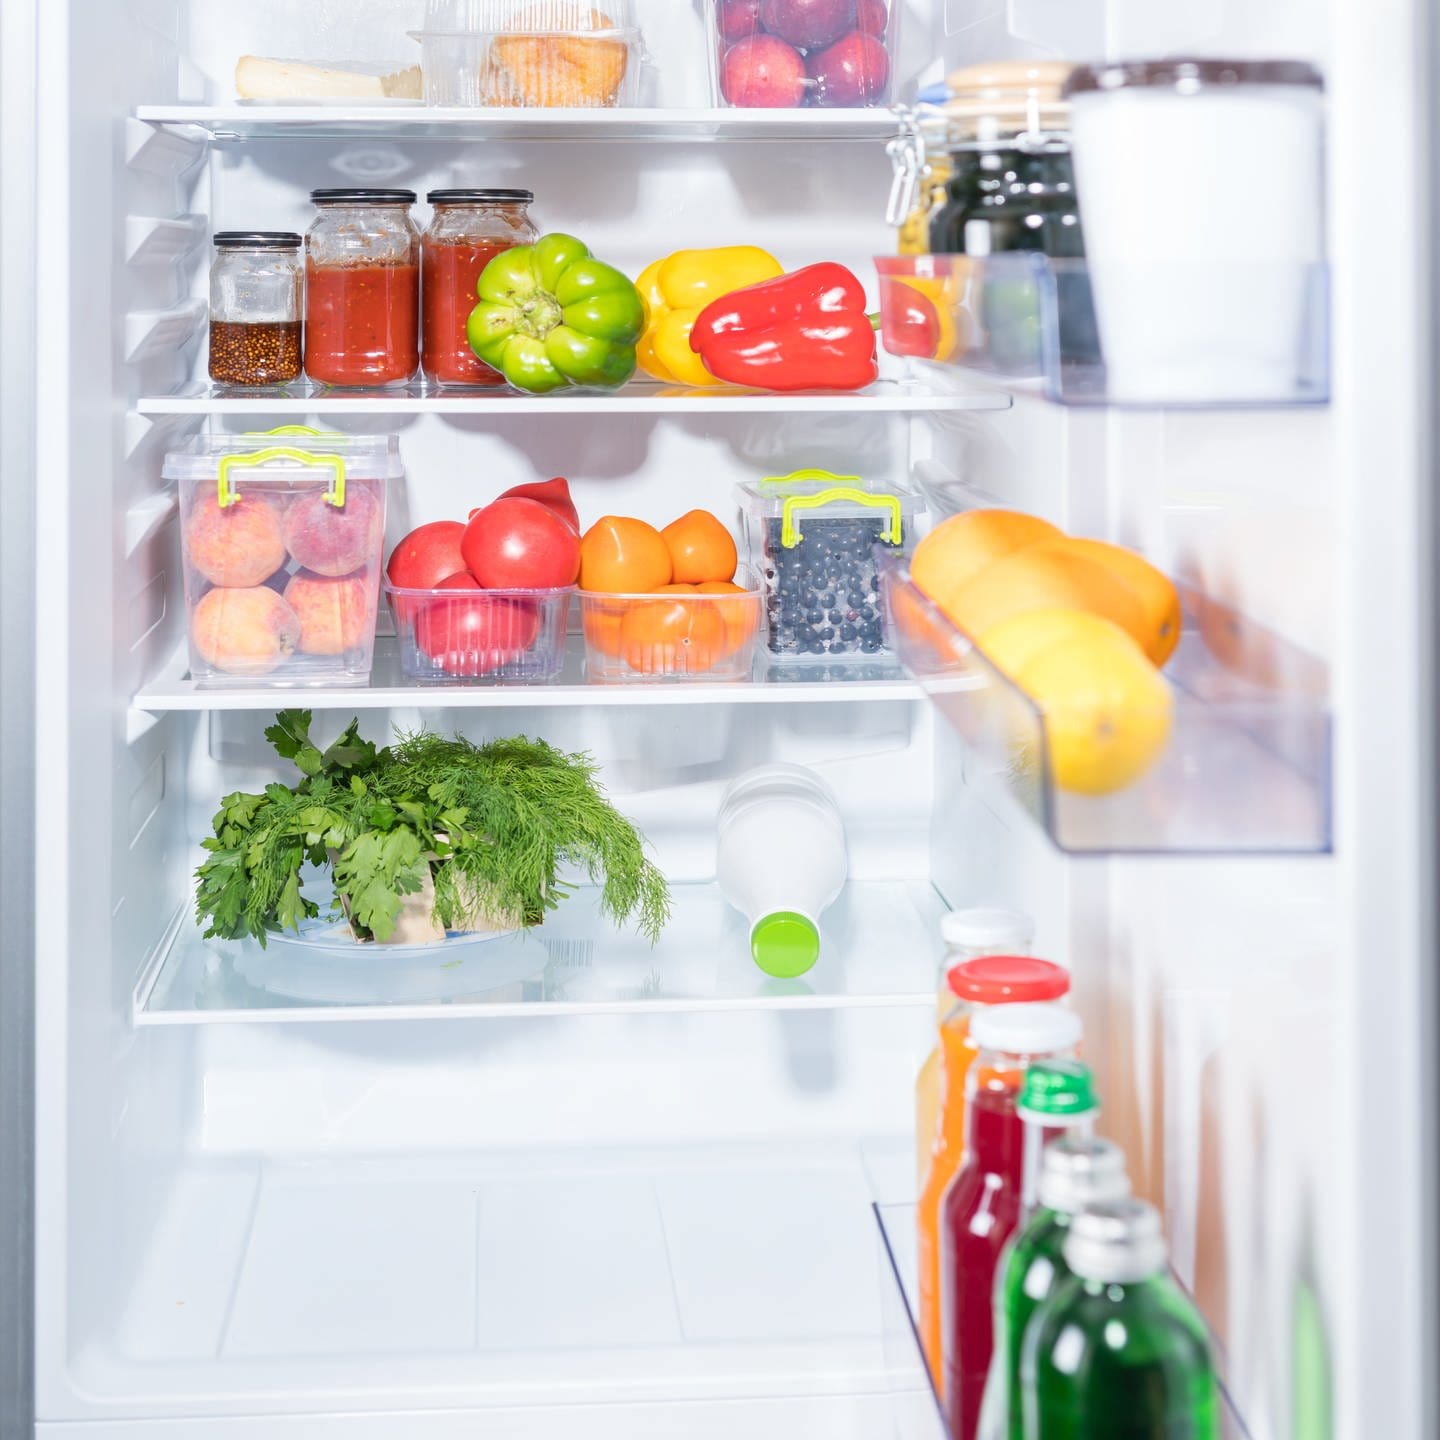 Kühlschrank kaufen: So machst du alles richtig! - Marktcheck - TV